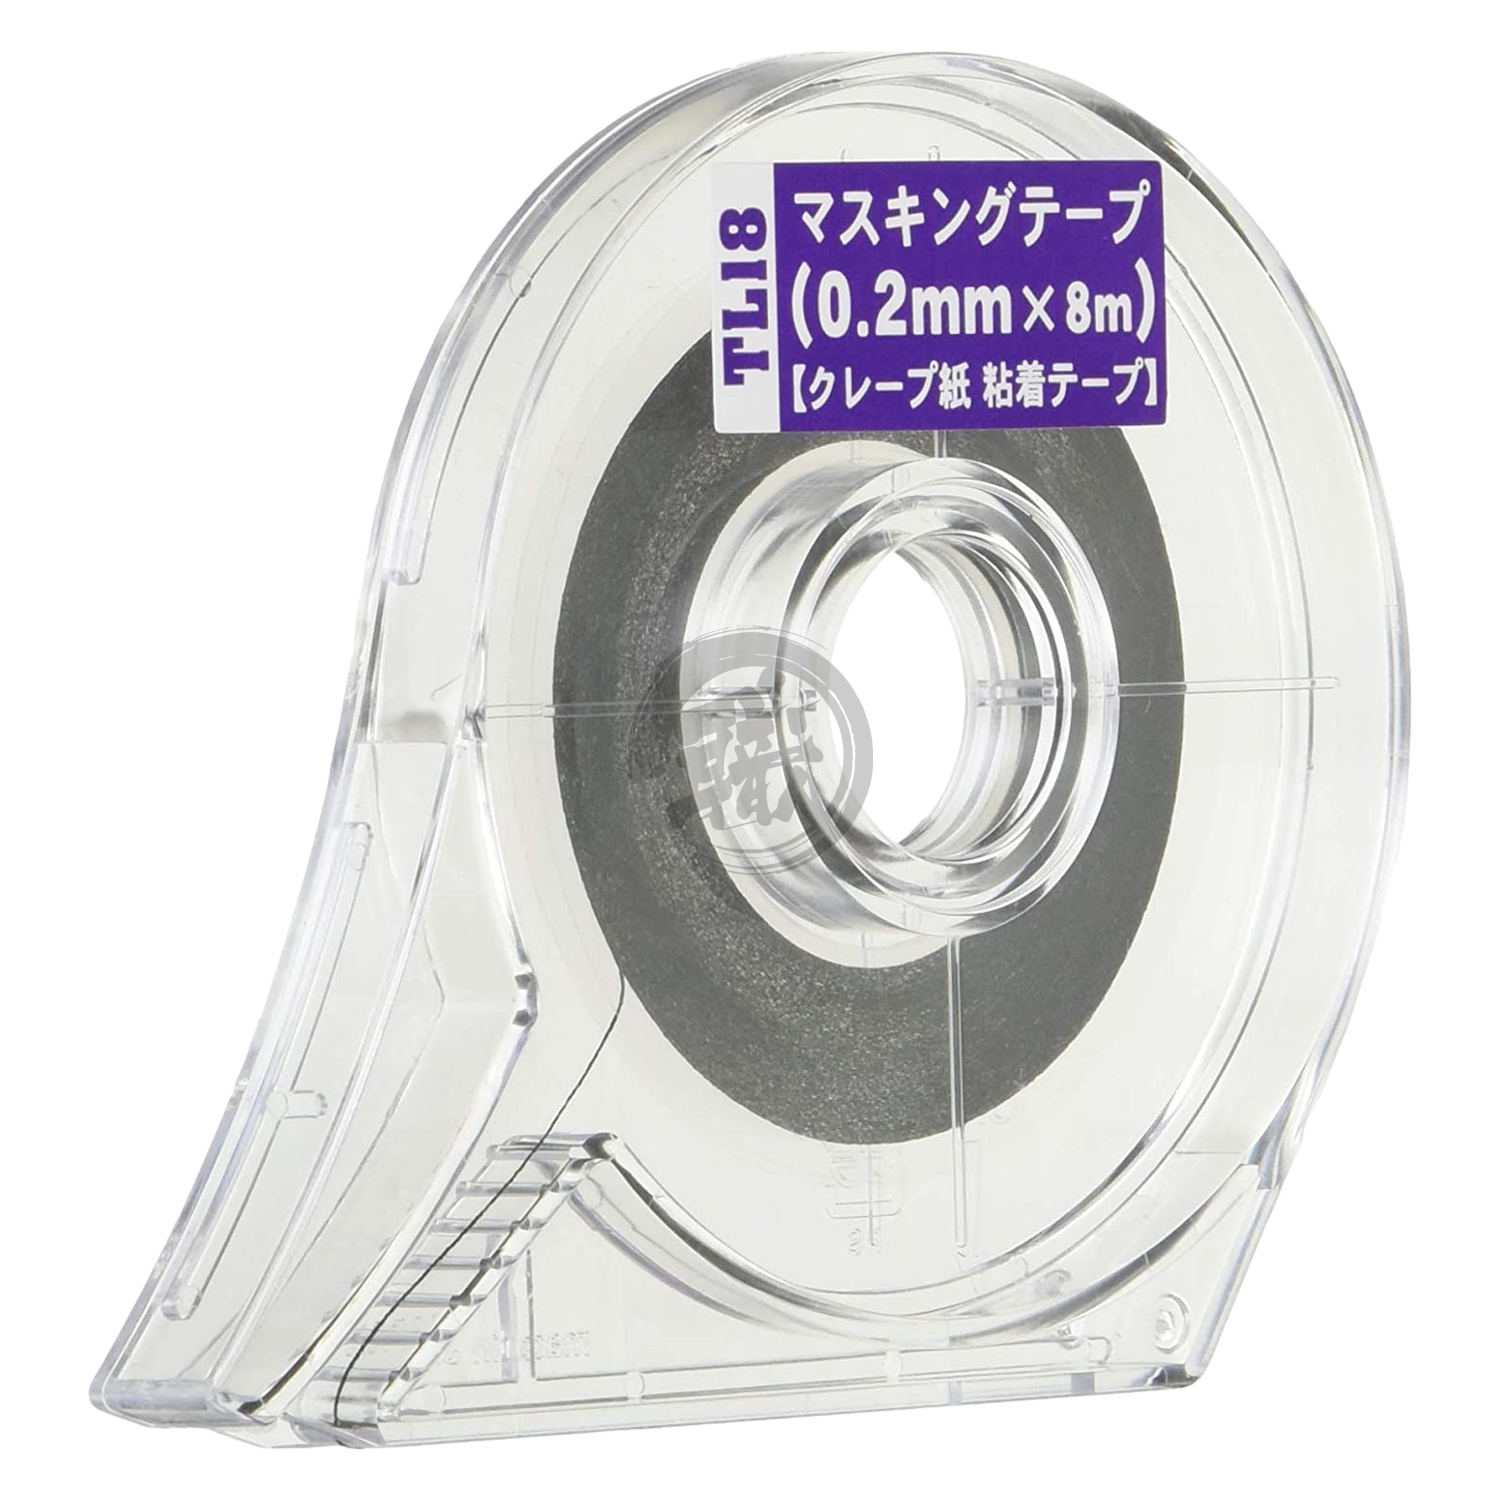 Masking Tape [0.2mm] - ShokuninGunpla